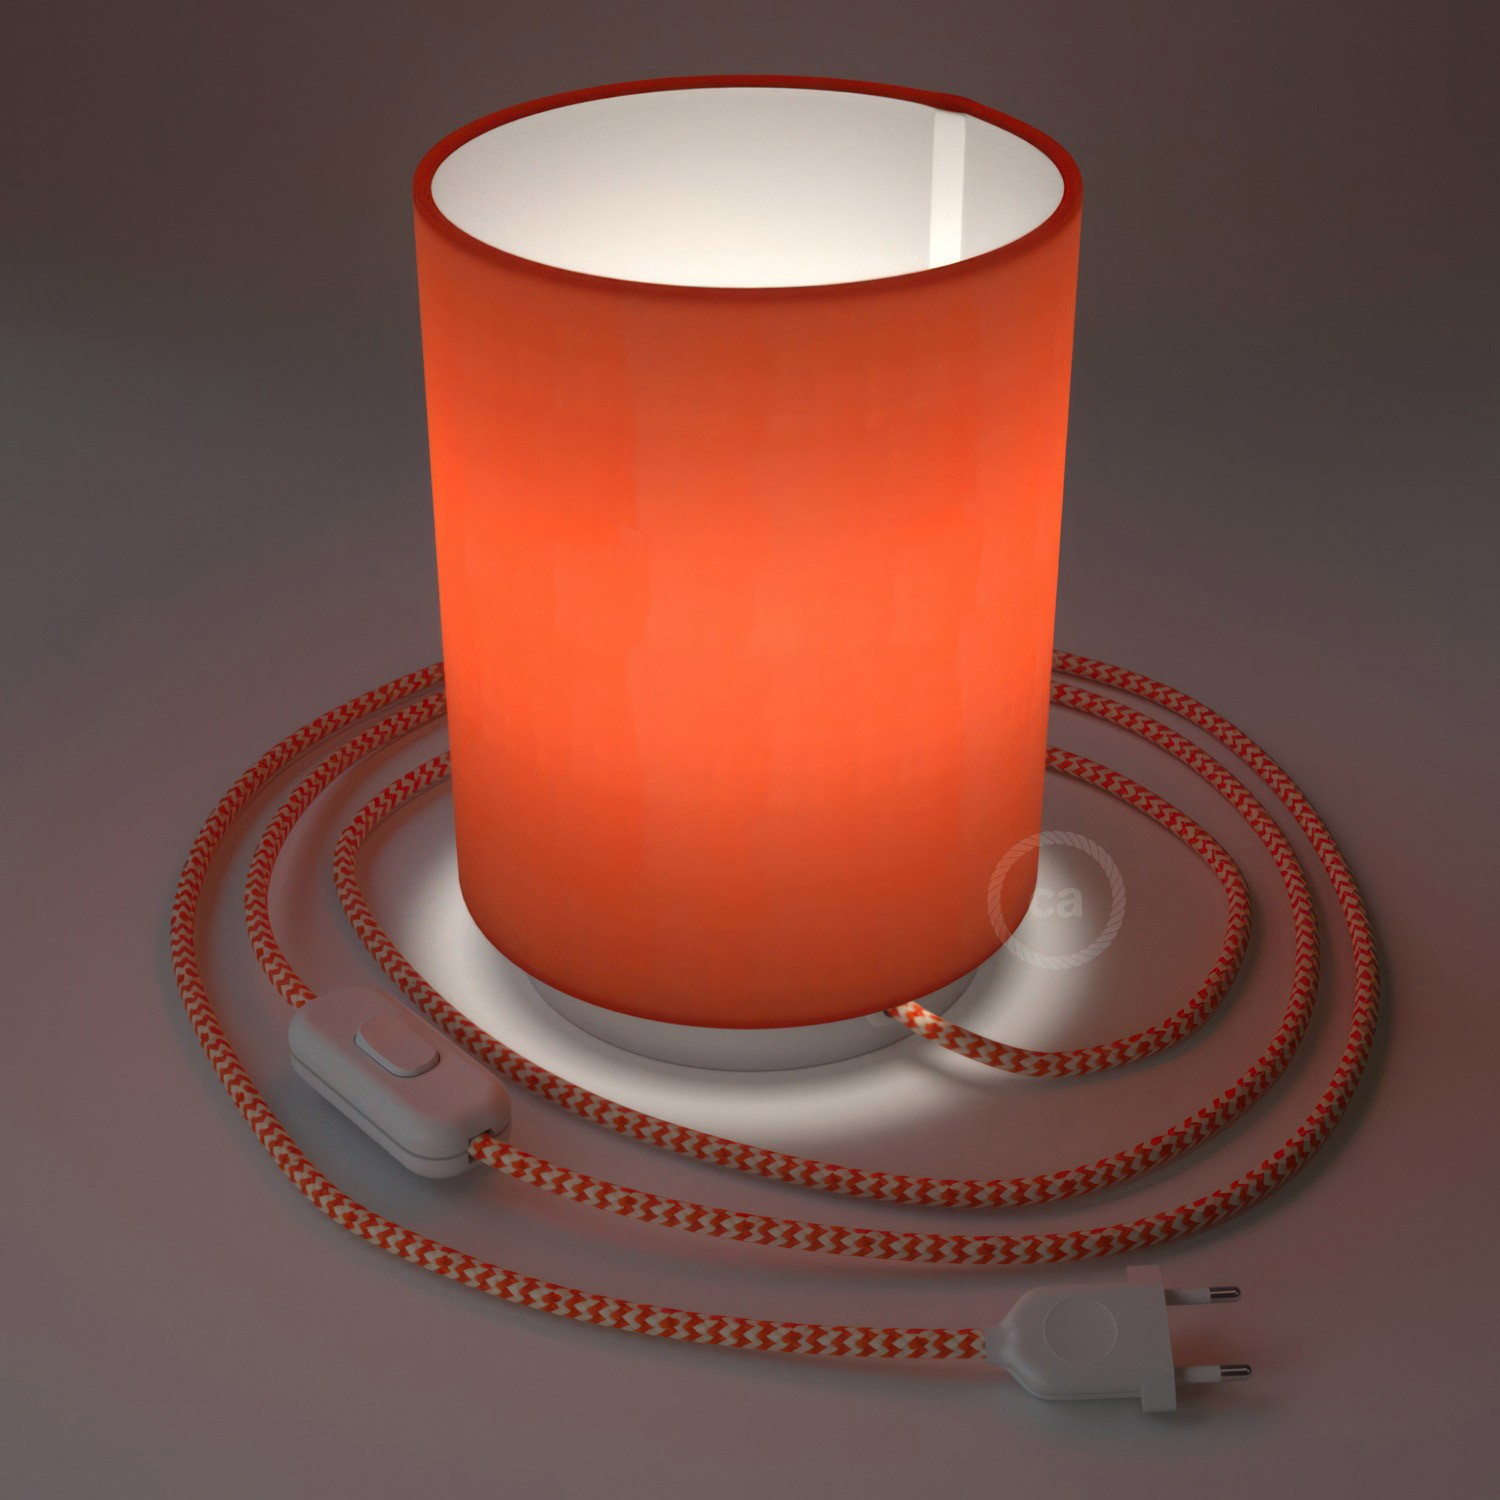 Posaluce Metal met Cilindro lampenkap van kreeftkleurig cinette, inclusief lichtbron textielkabel schakelaar en 2-polige stekker